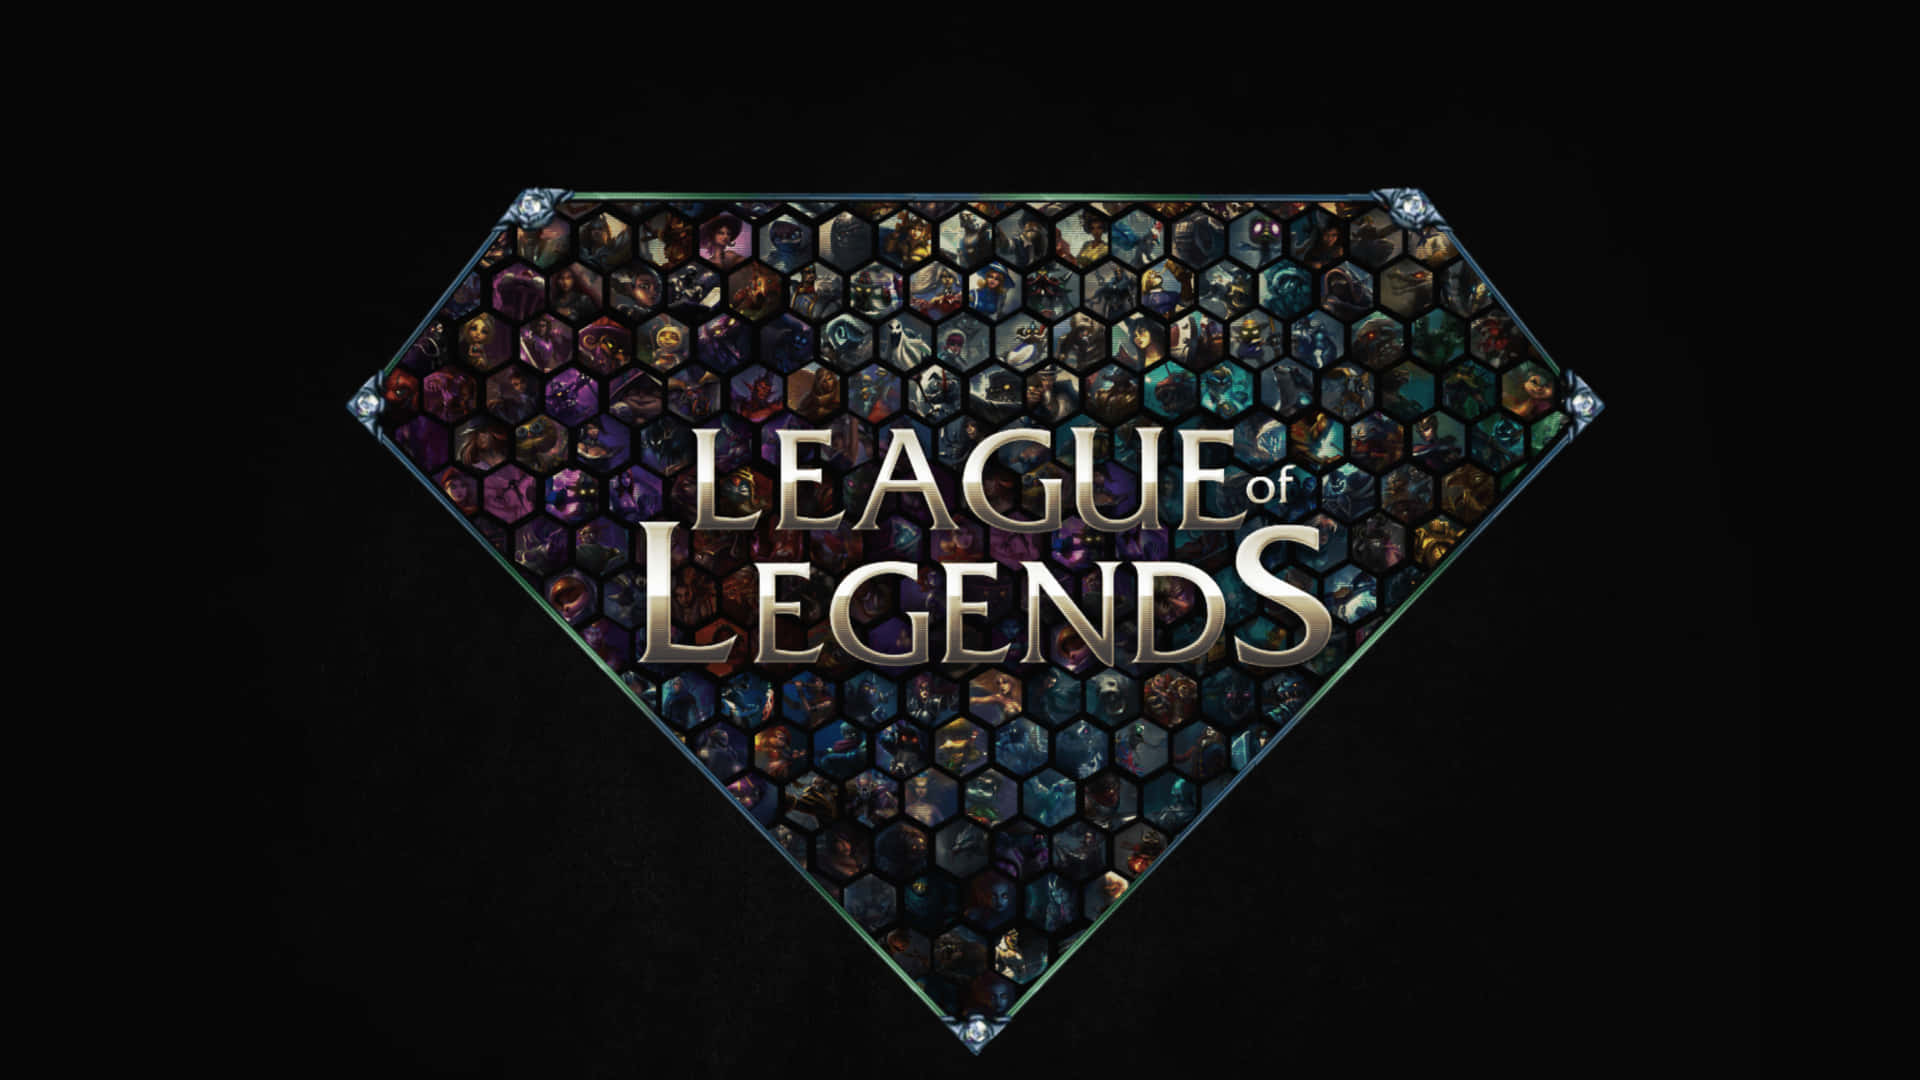 Fåfart På Dine Spil Med League Of Legends-væggepynt Til Computer Eller Mobiltelefon.